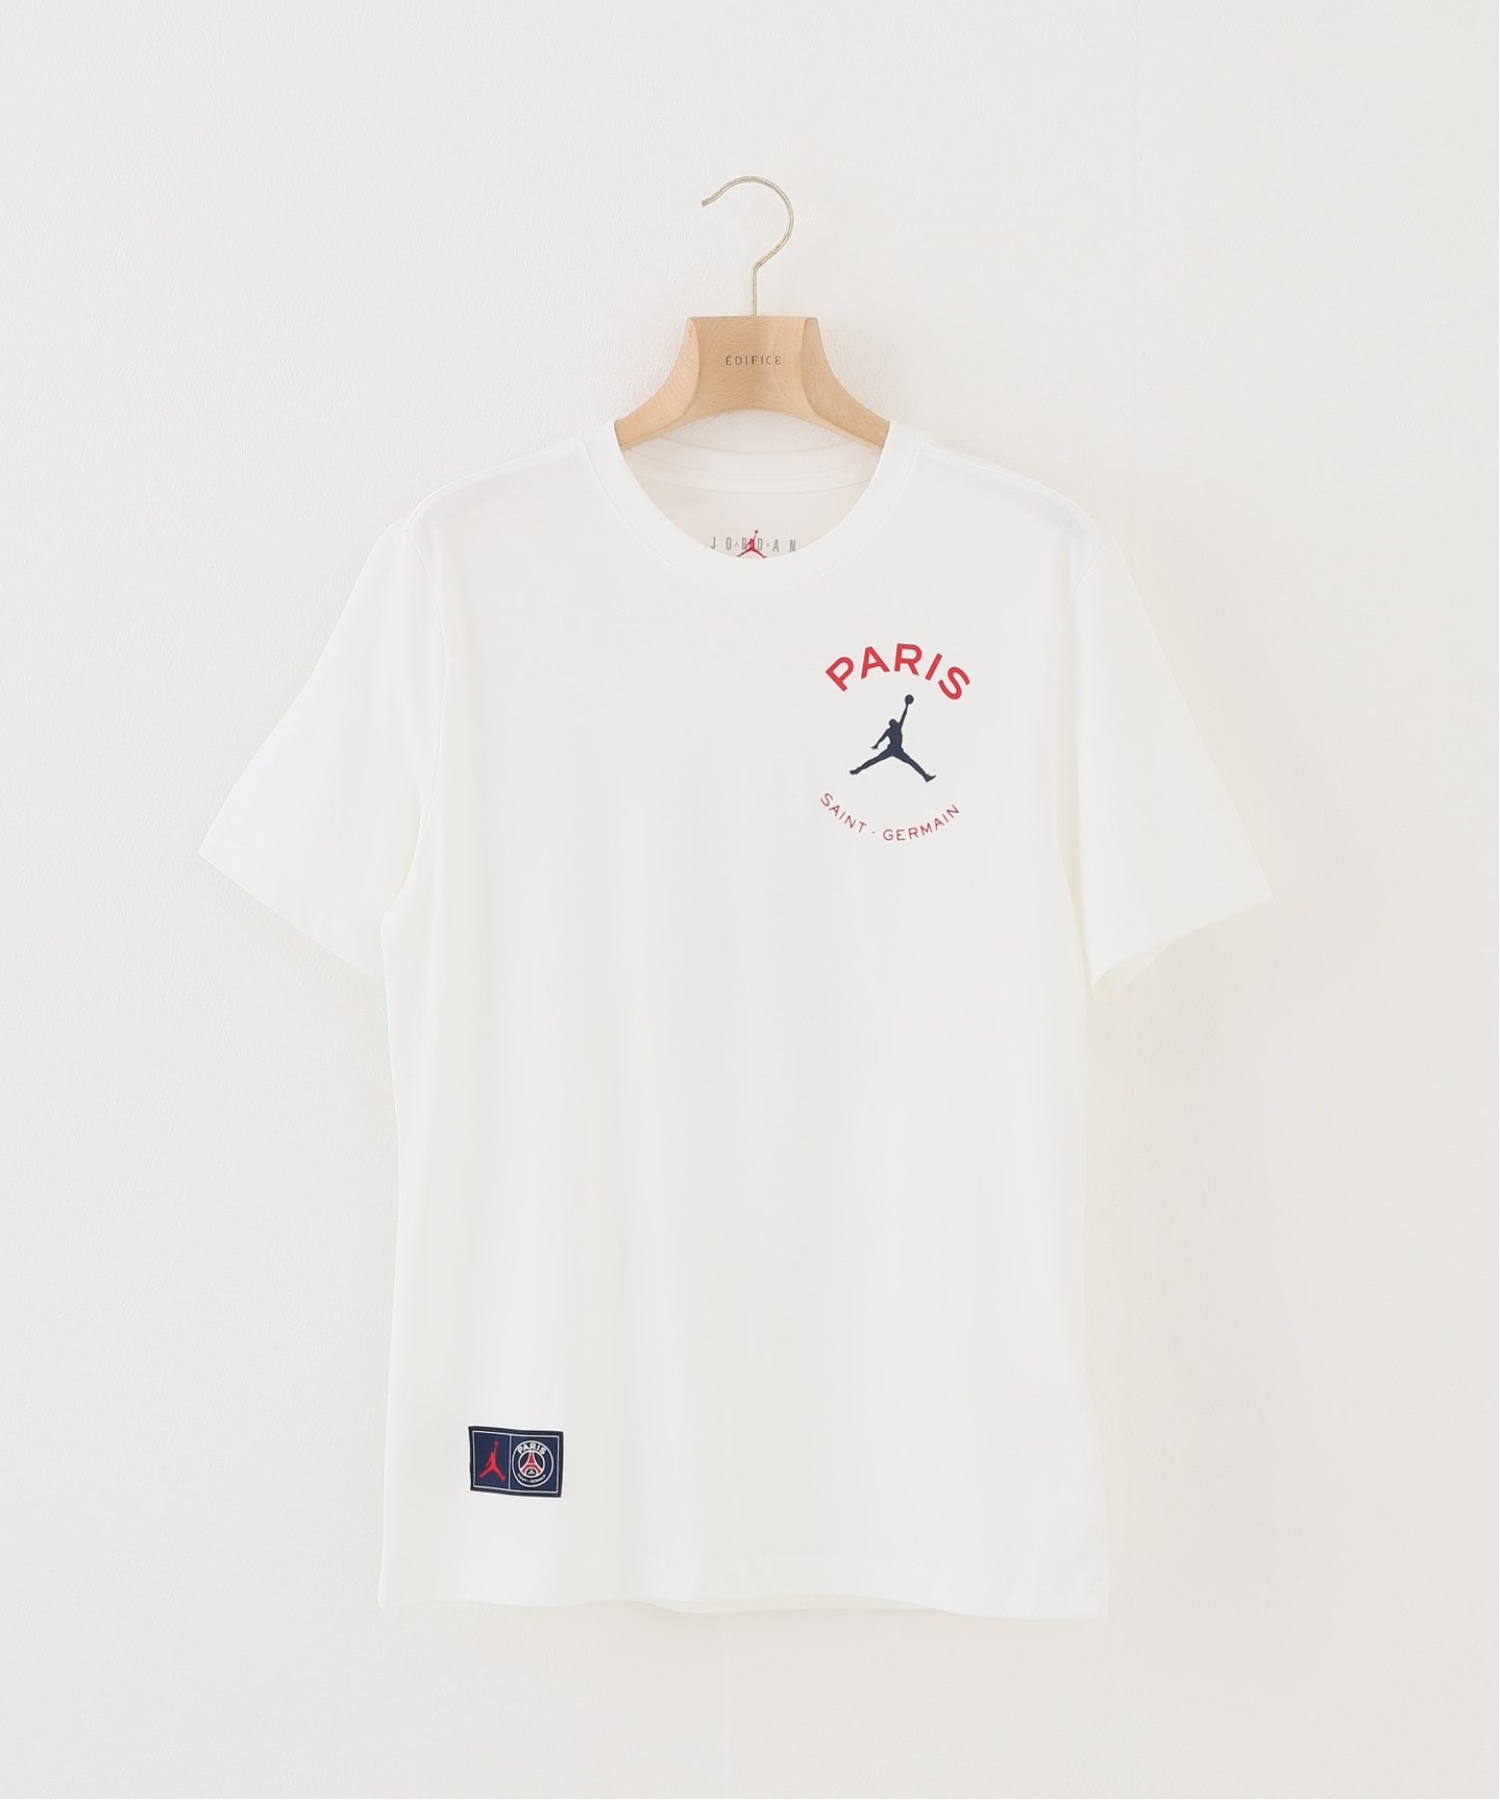 新入荷 JORDAN BRAND × Paris Saint-Germain ロゴ S Tシャツ urbantuning.es